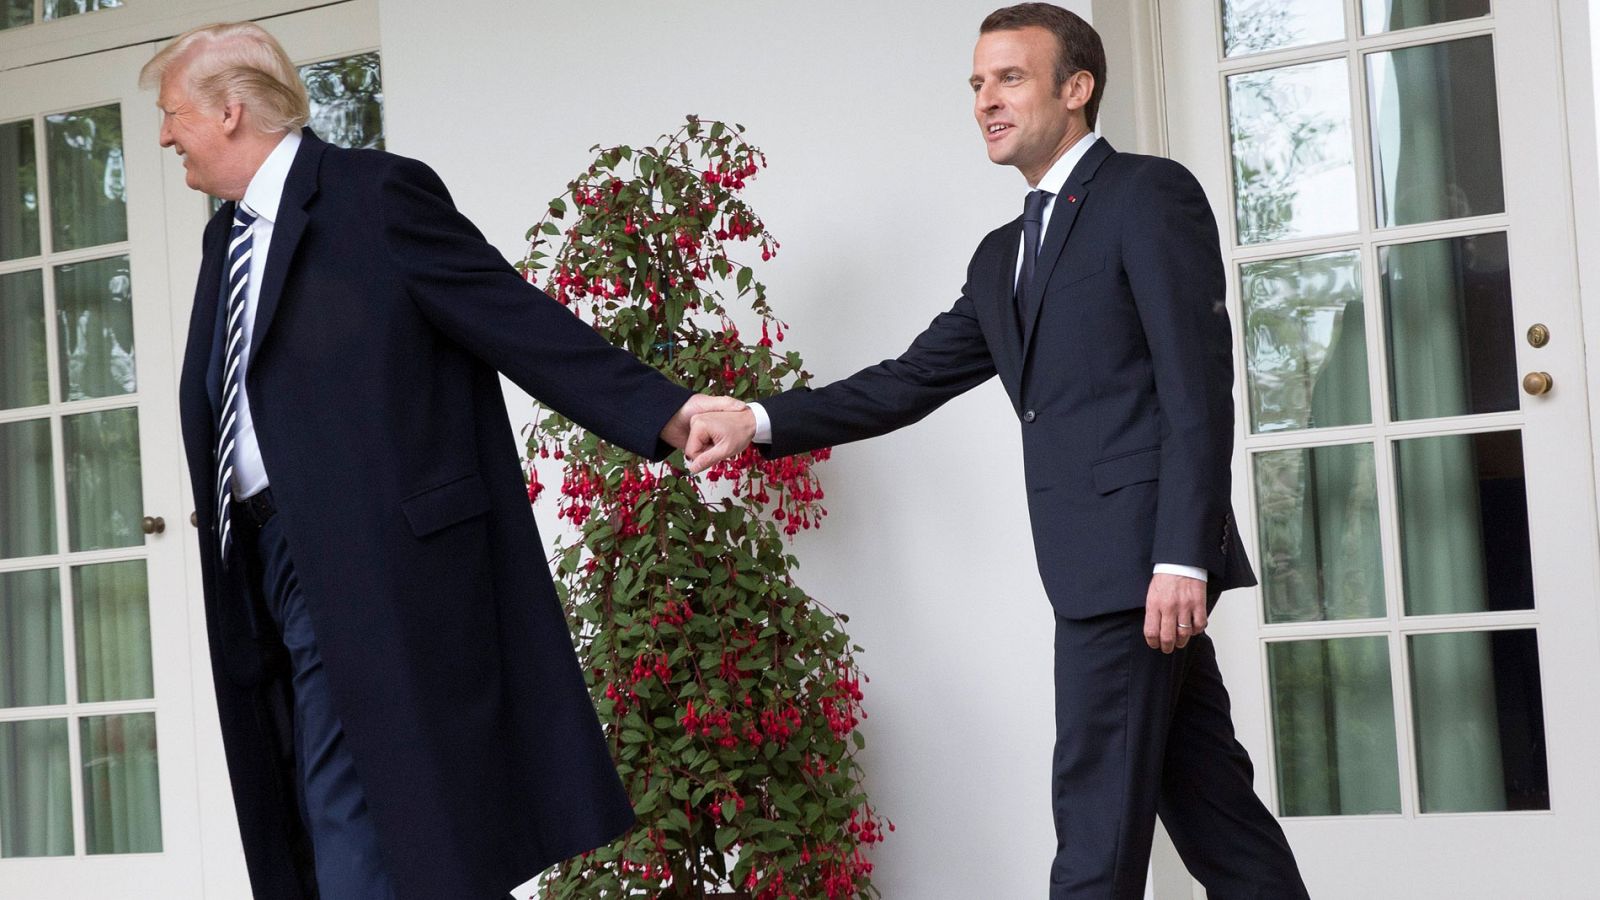 La era Trump | Trump vapulea el "horrible" acuerdo nuclear iraní ante Macron, que se ofrece a renegociarlo